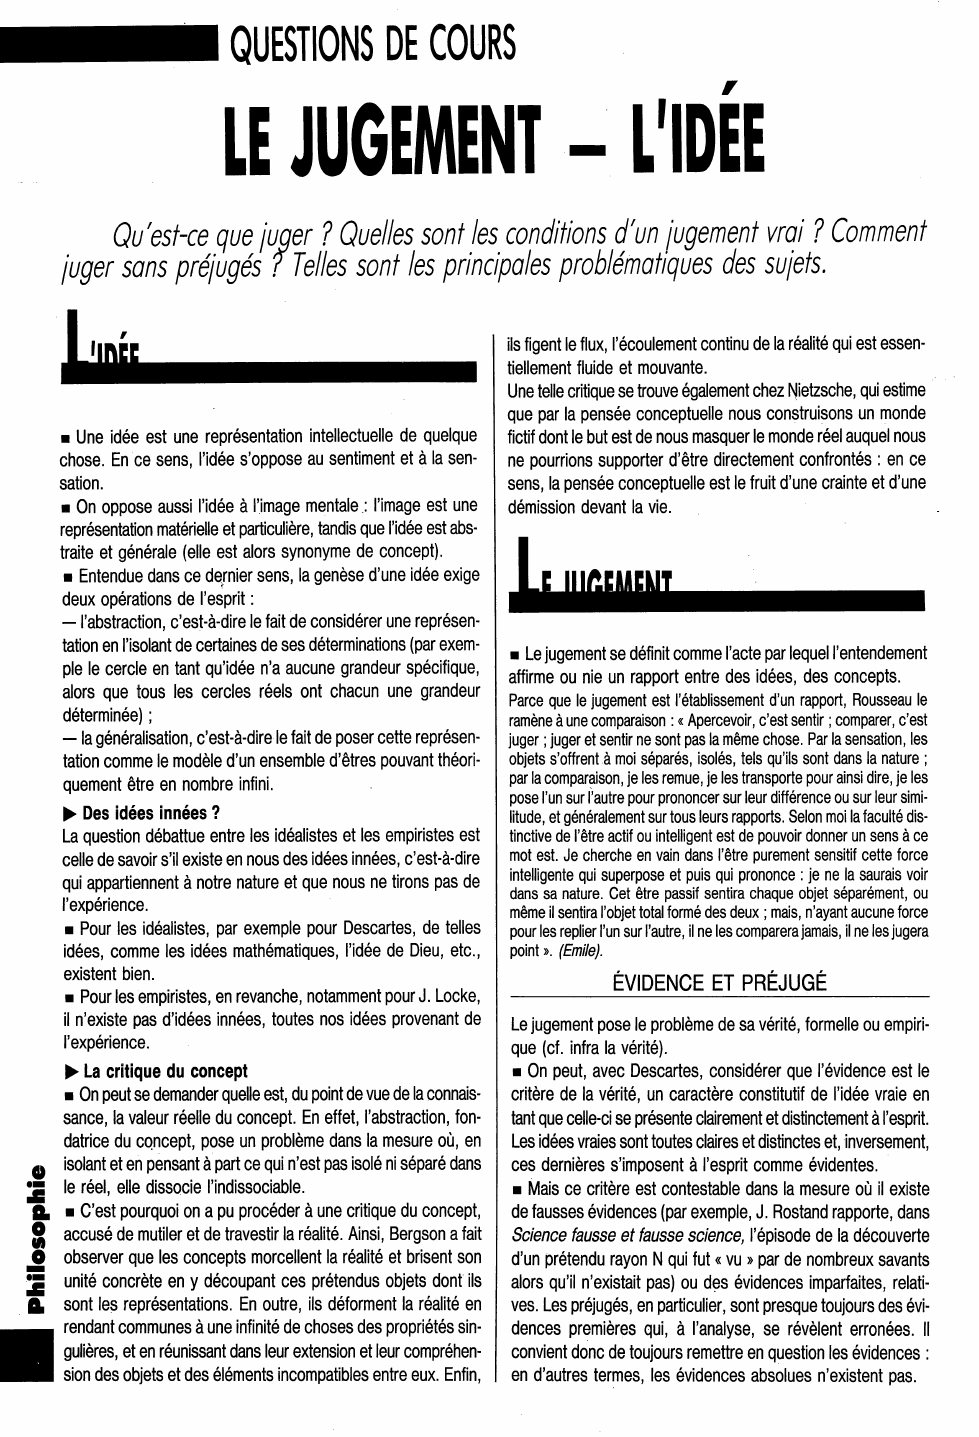 Prévisualisation du document QUESTIONS DE COURS
LE JUGEMENT - L'IDÉE